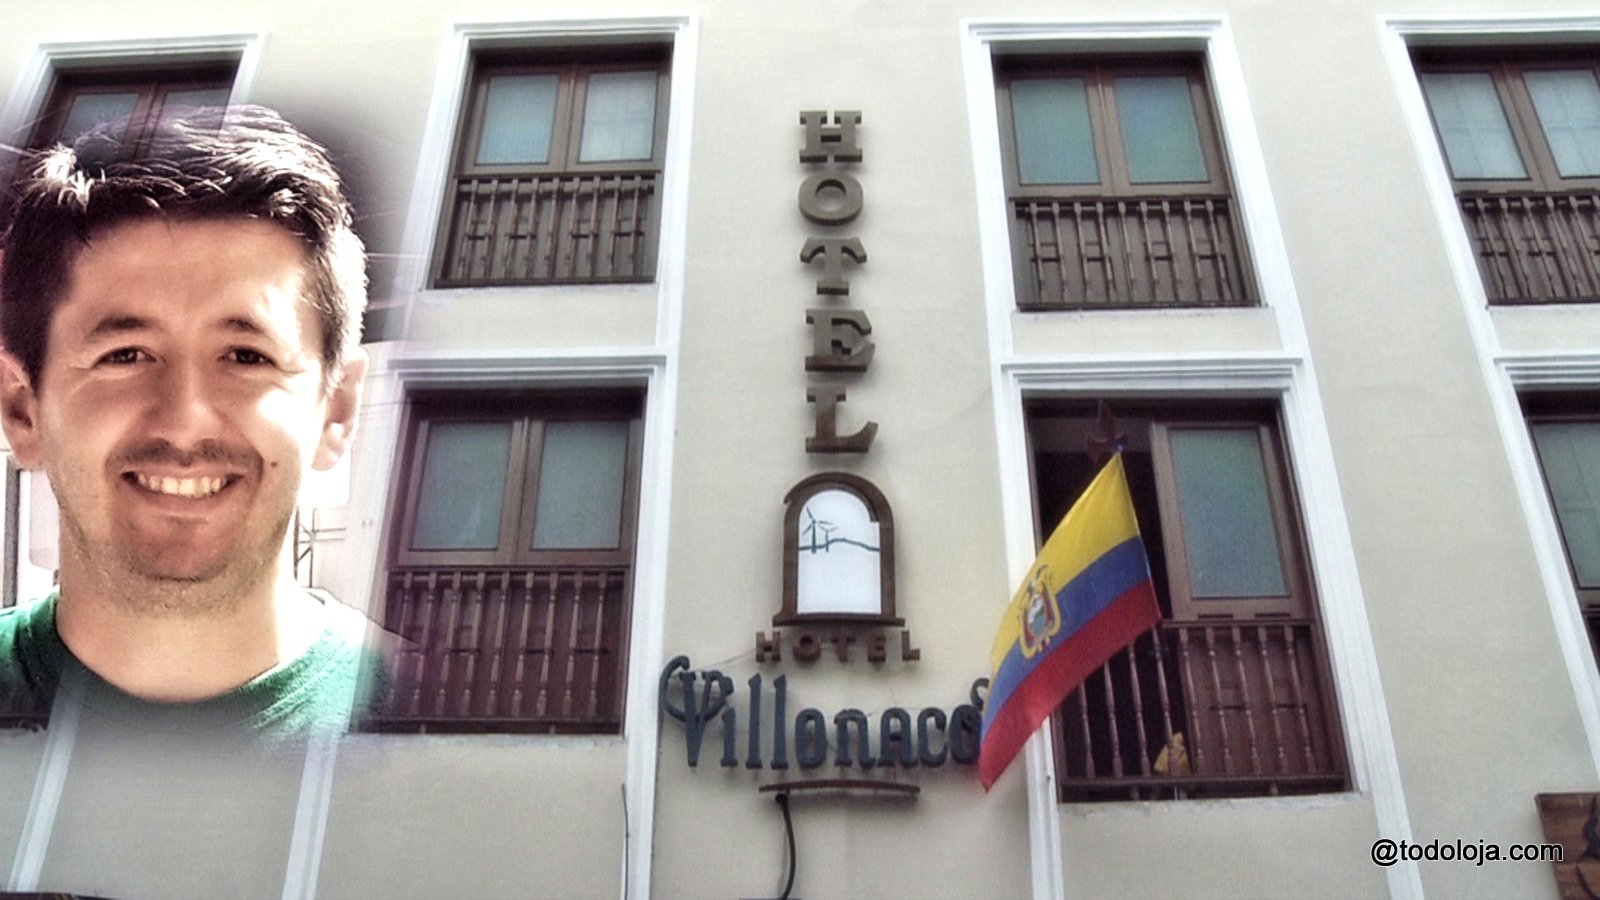 Hotel Villonaco – Your home in Loja Ecuador